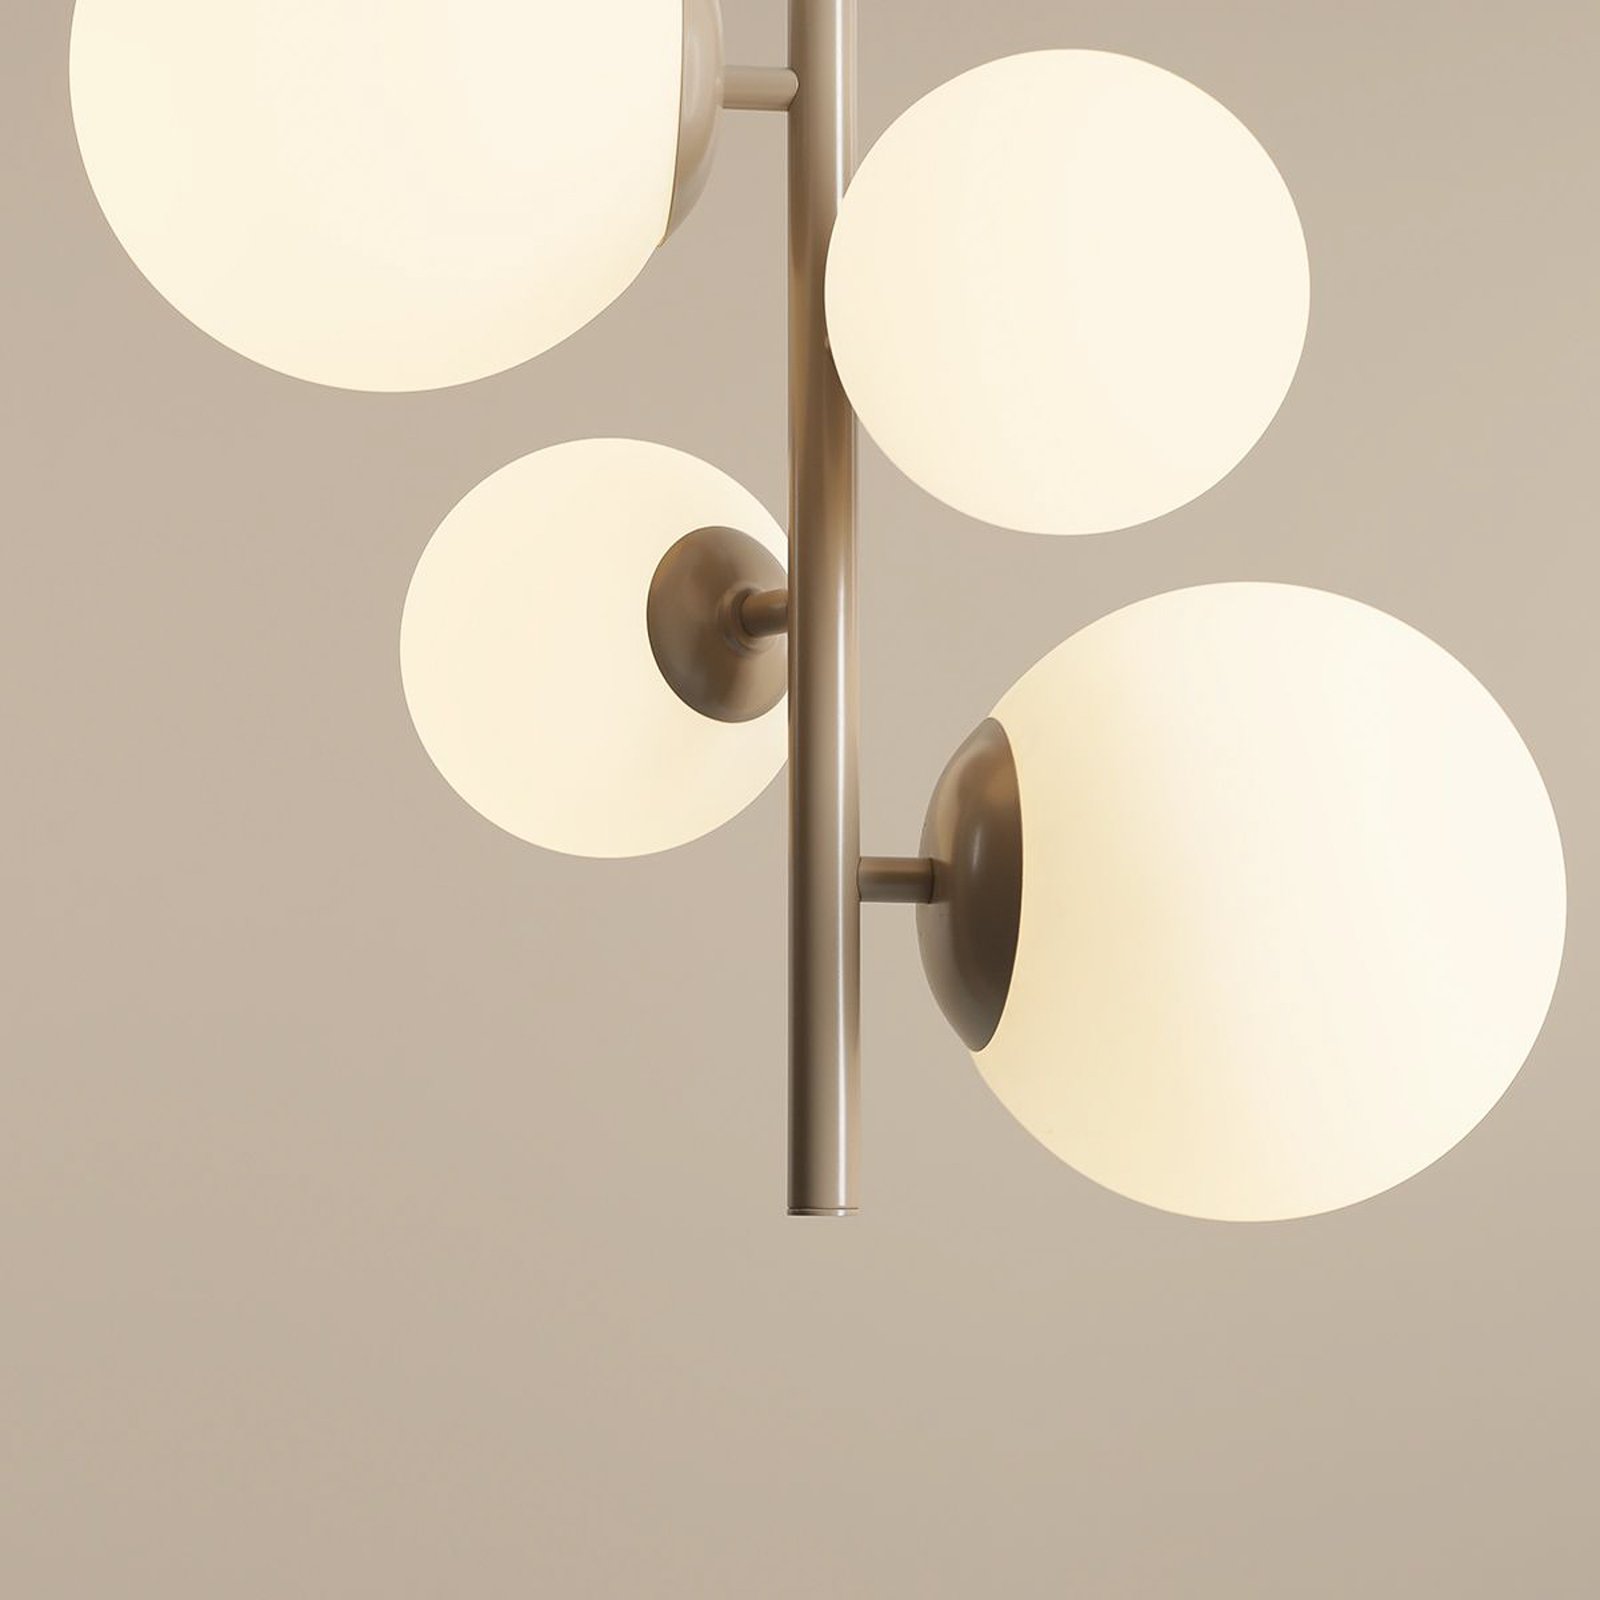 Hanglamp Joel, beige/wit, 4-lamps